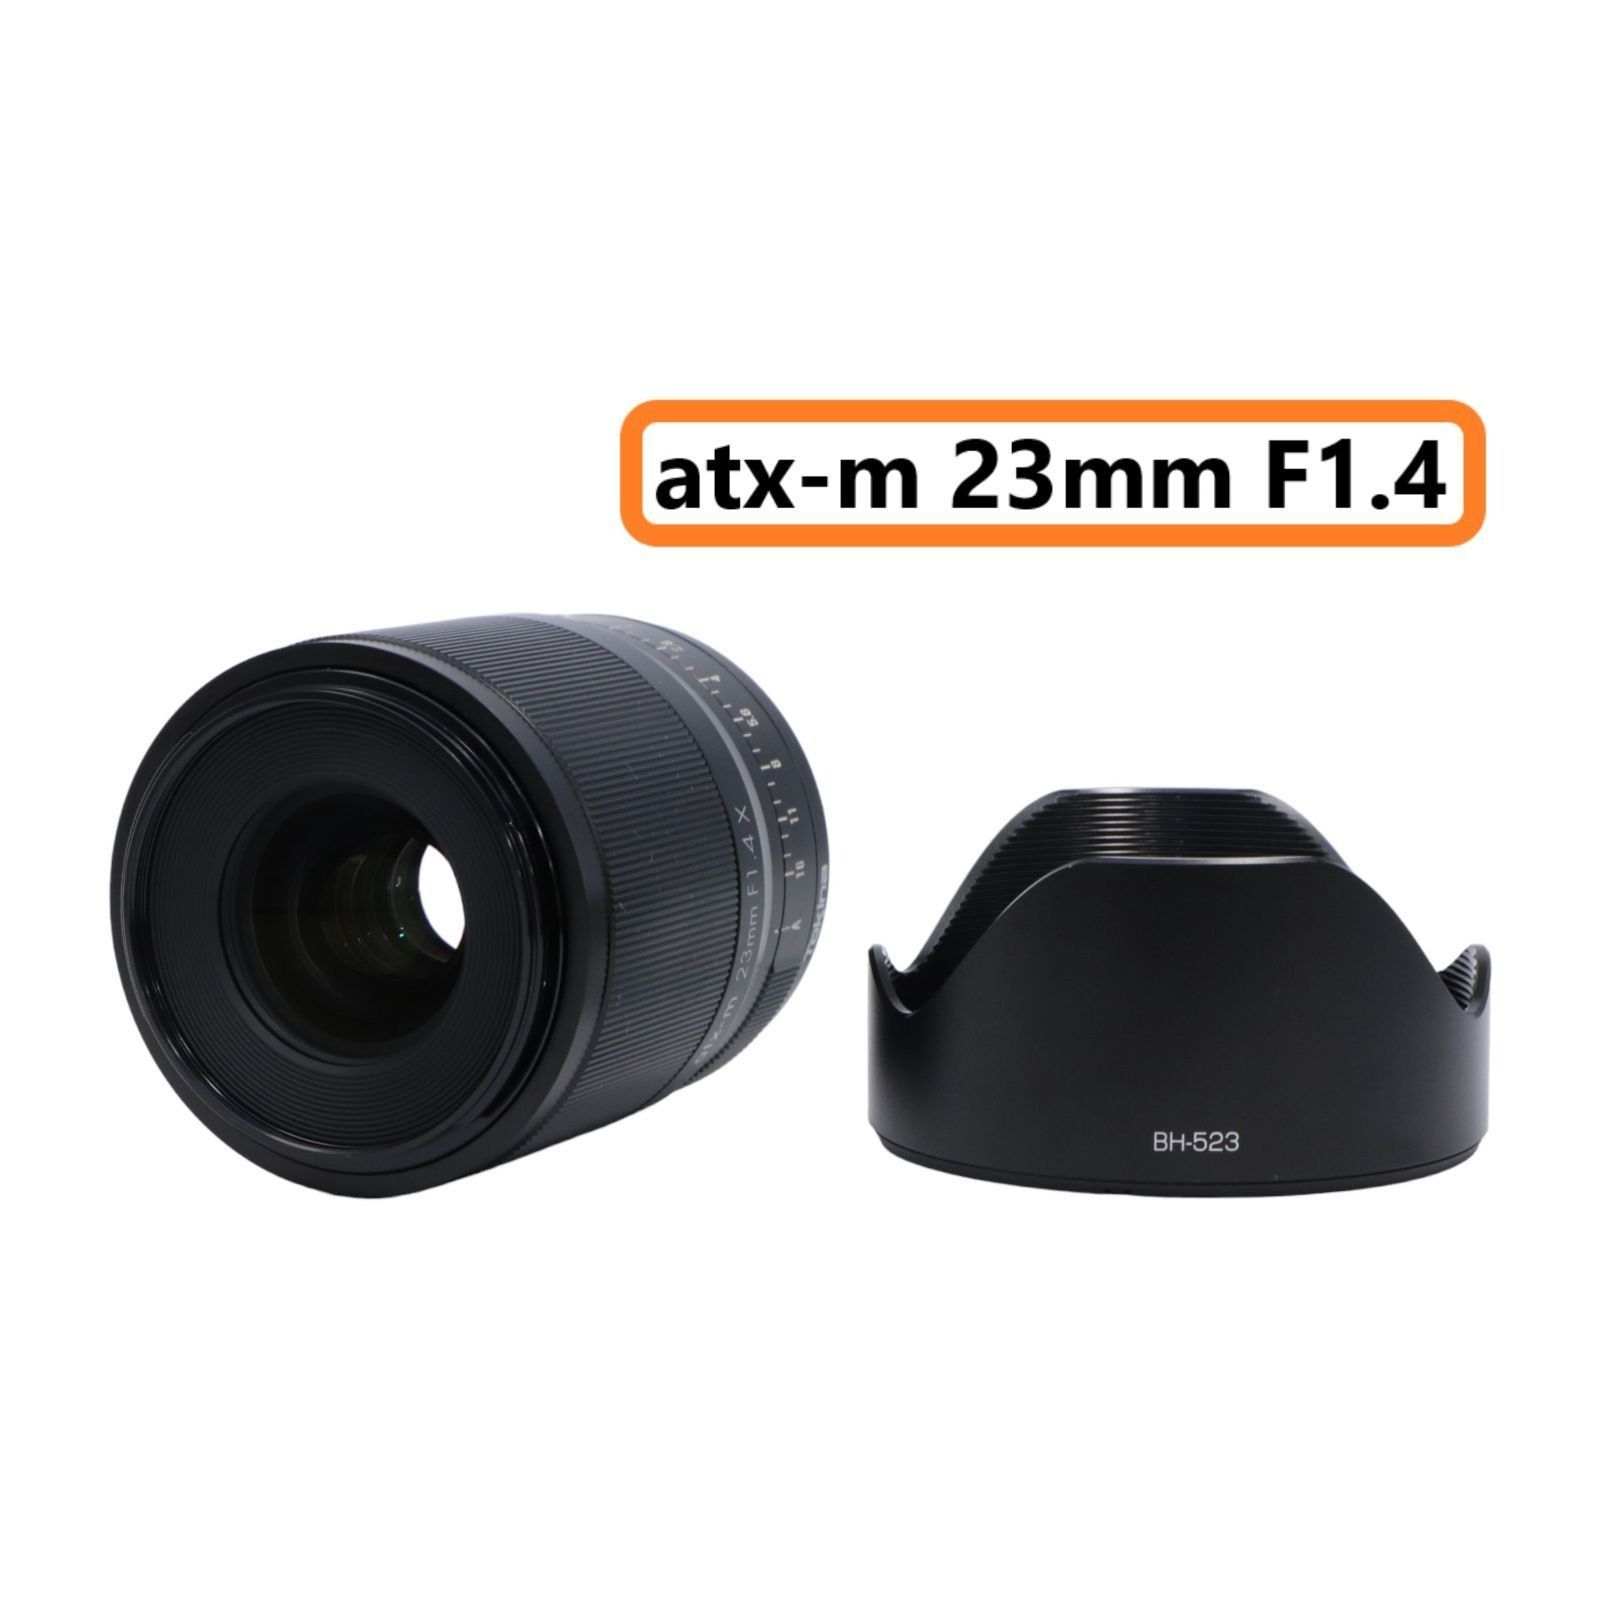 atx-m 23mm F1.4 [フジフイルム Xマウント用] - レンズ(単焦点)